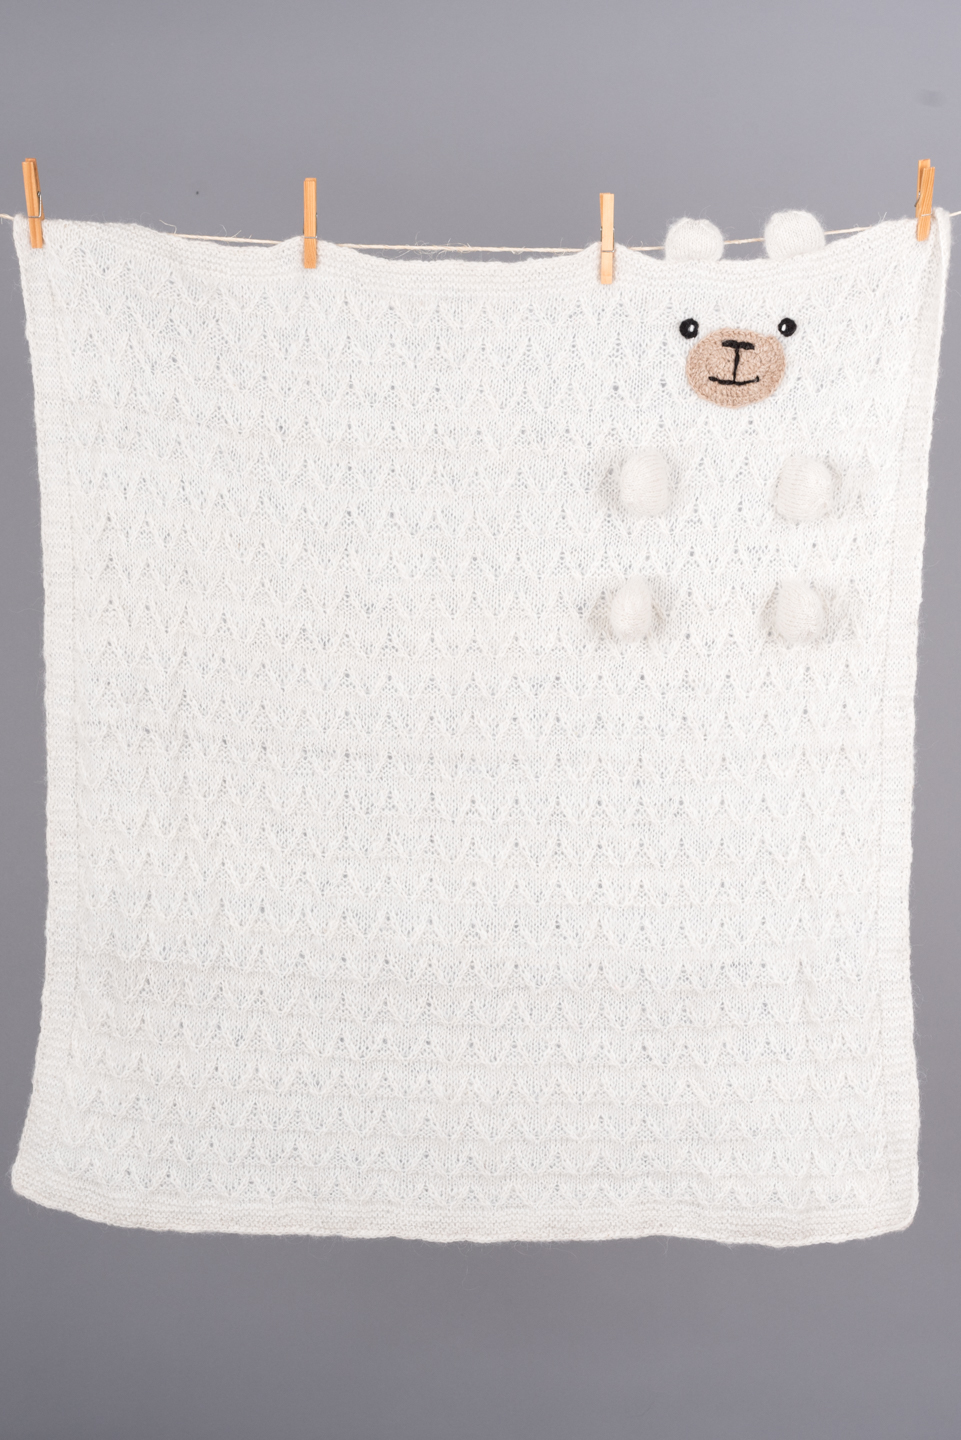 couverture pour bébé, modèle ourson / baby blanket, teddy bear style